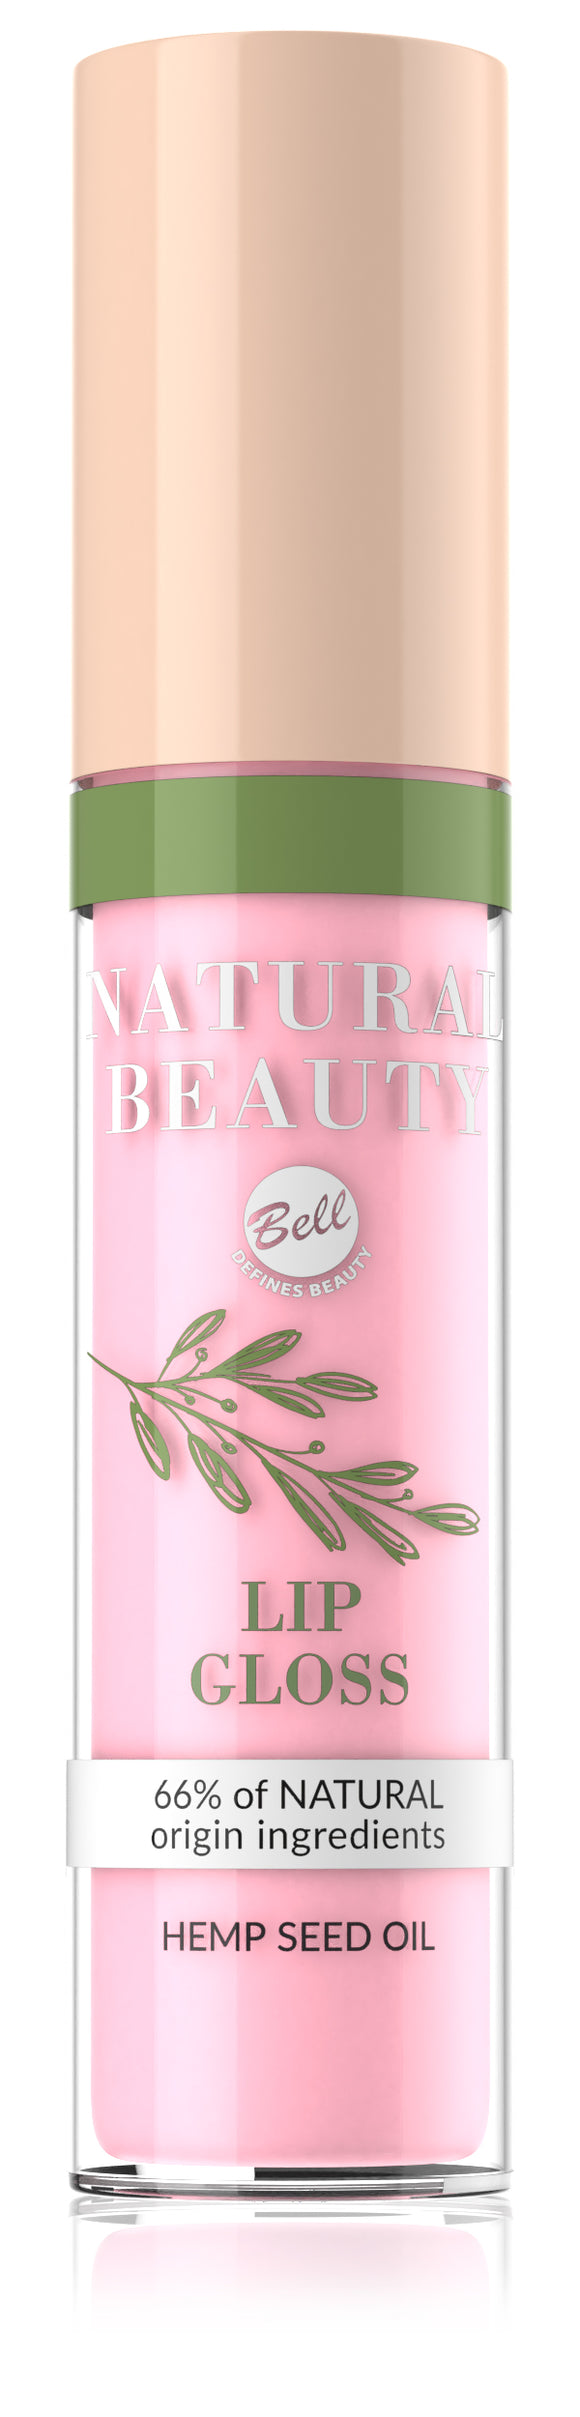 Bell Natural Beauty Moisturising Lip Gloss - 03 Pink Gloss